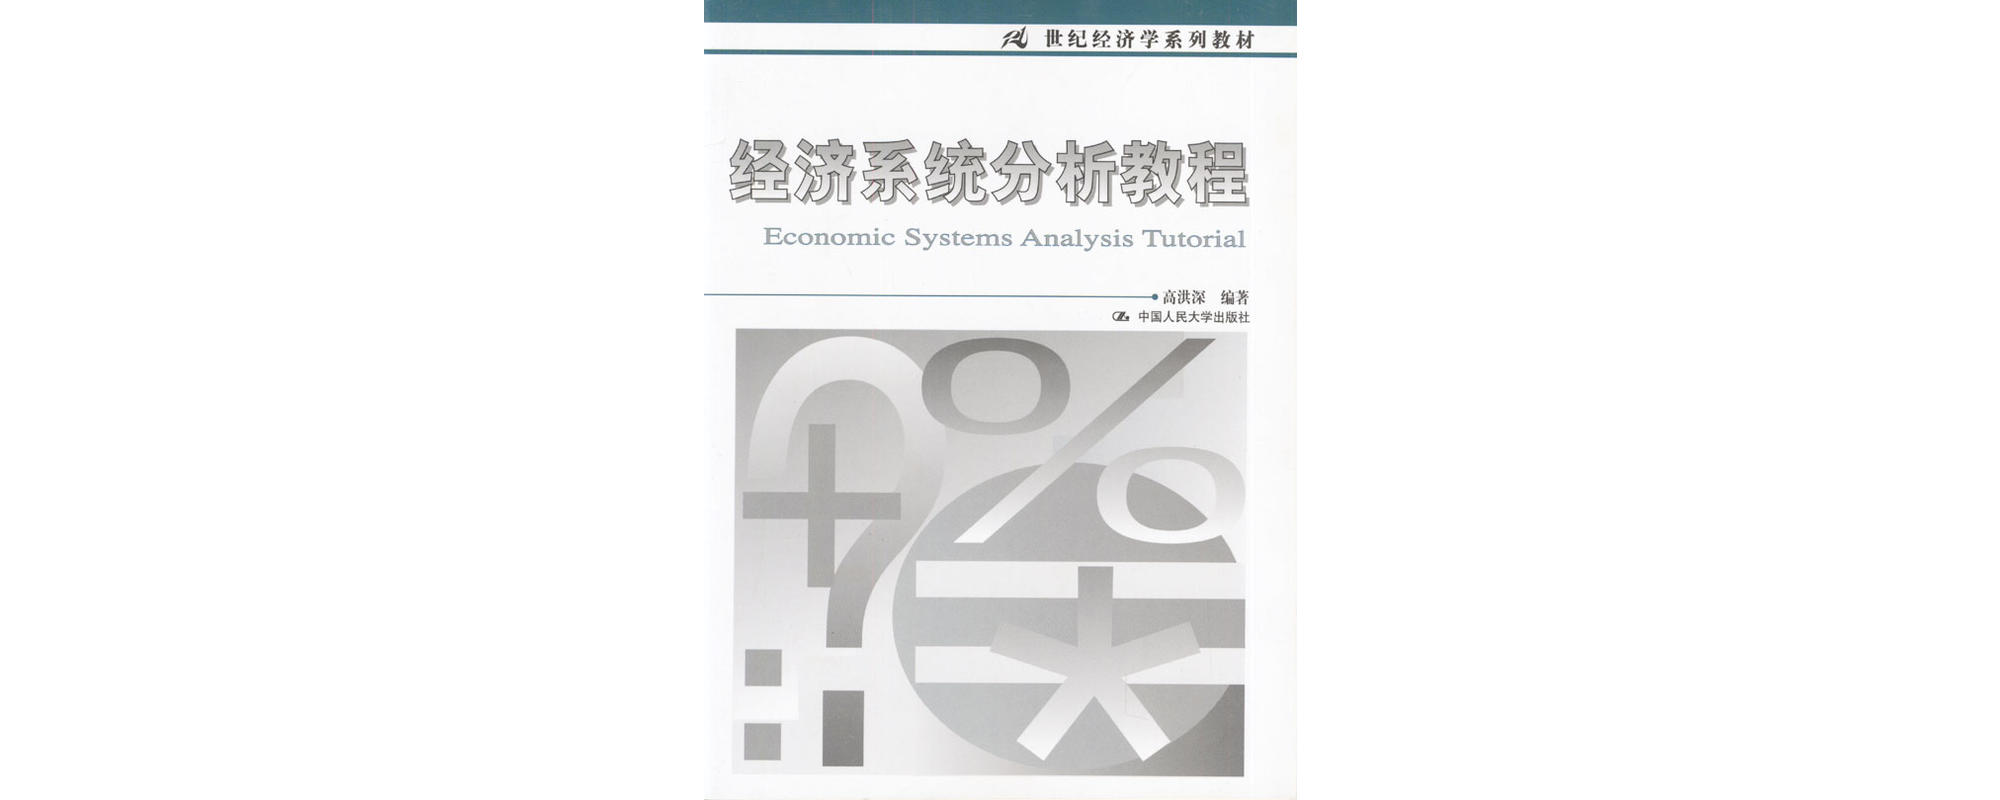 經濟系統分析教程